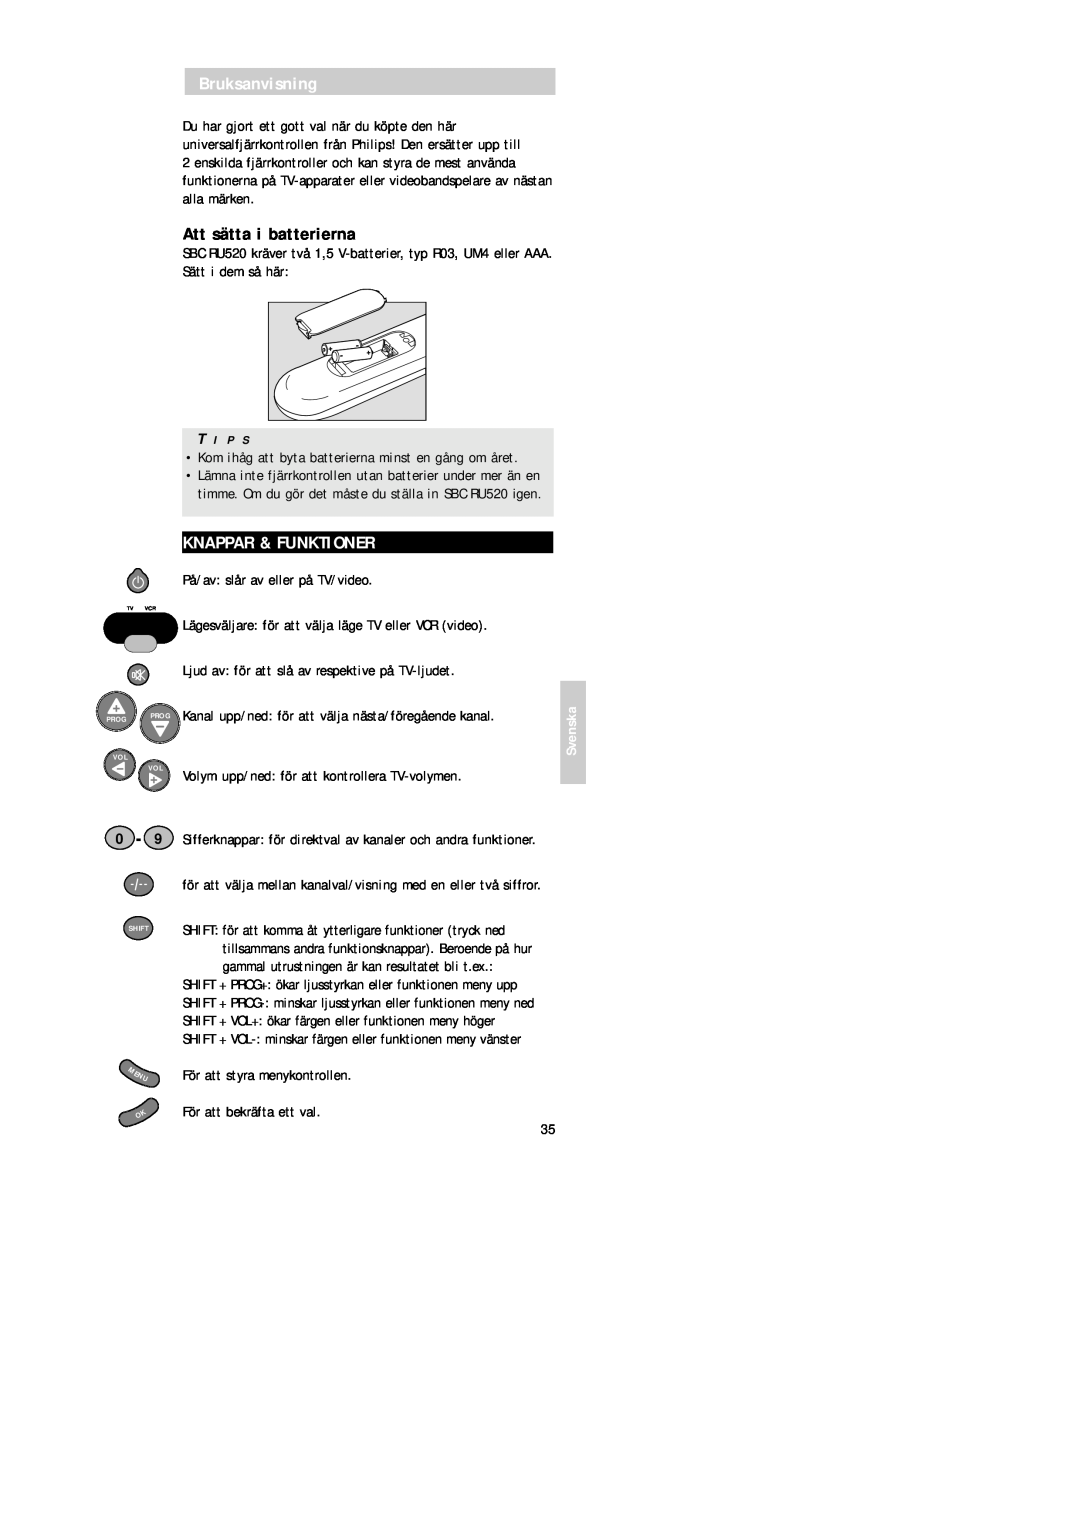 Philips SBC RU 520 manual Bruksanvisning, Att sätta i batterierna, Knappar & Funktioner, Svenska, För att bekräfta ett val 